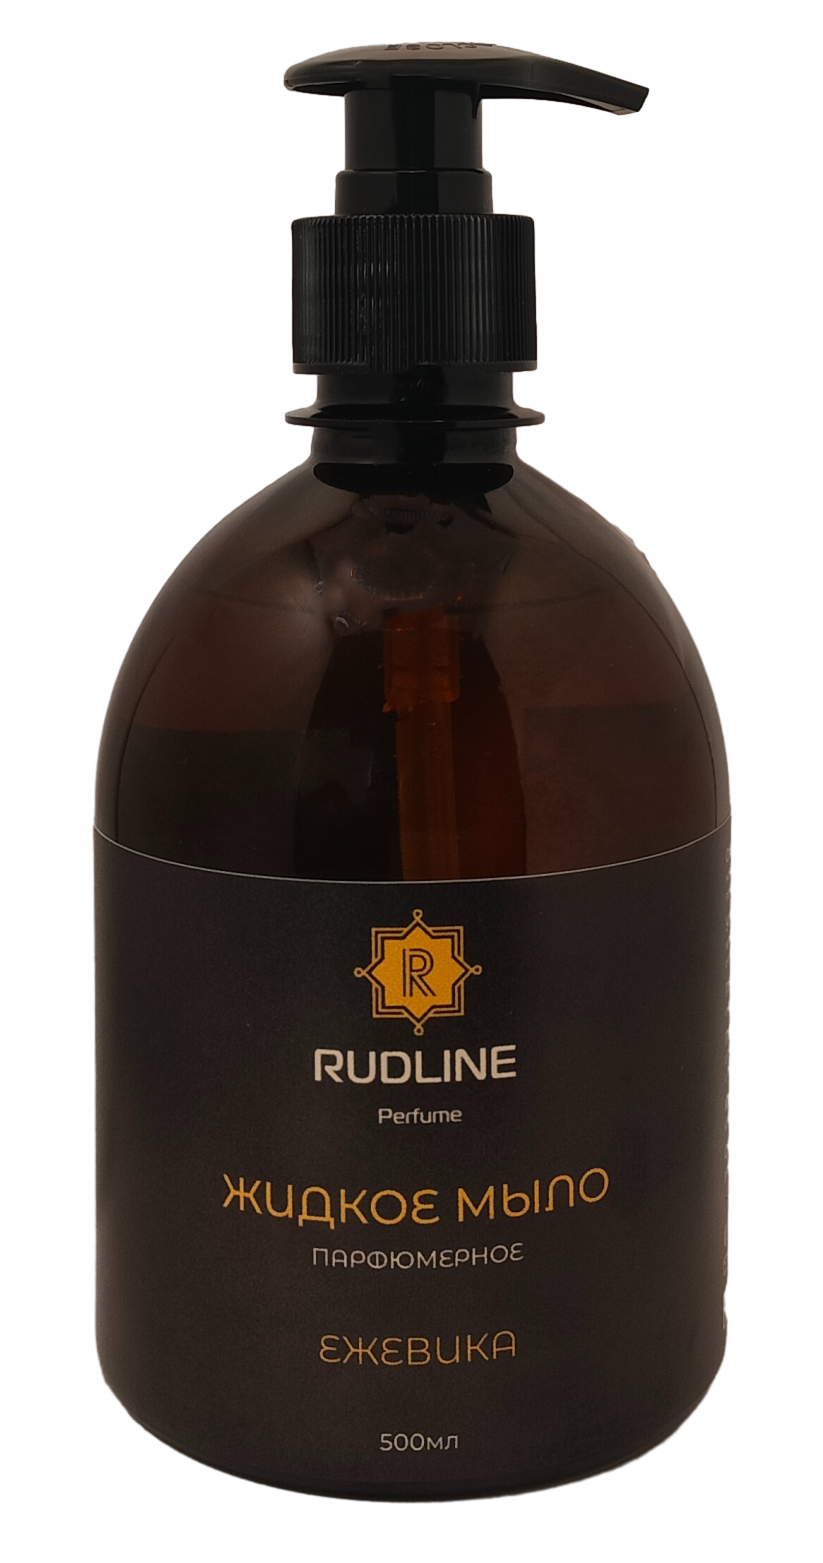 Жидкое мыло парфюмированное RudLine Ежевика 500 мл arriviste жидкое мыло для рук уходовое парфюмированное spicy cherry 460